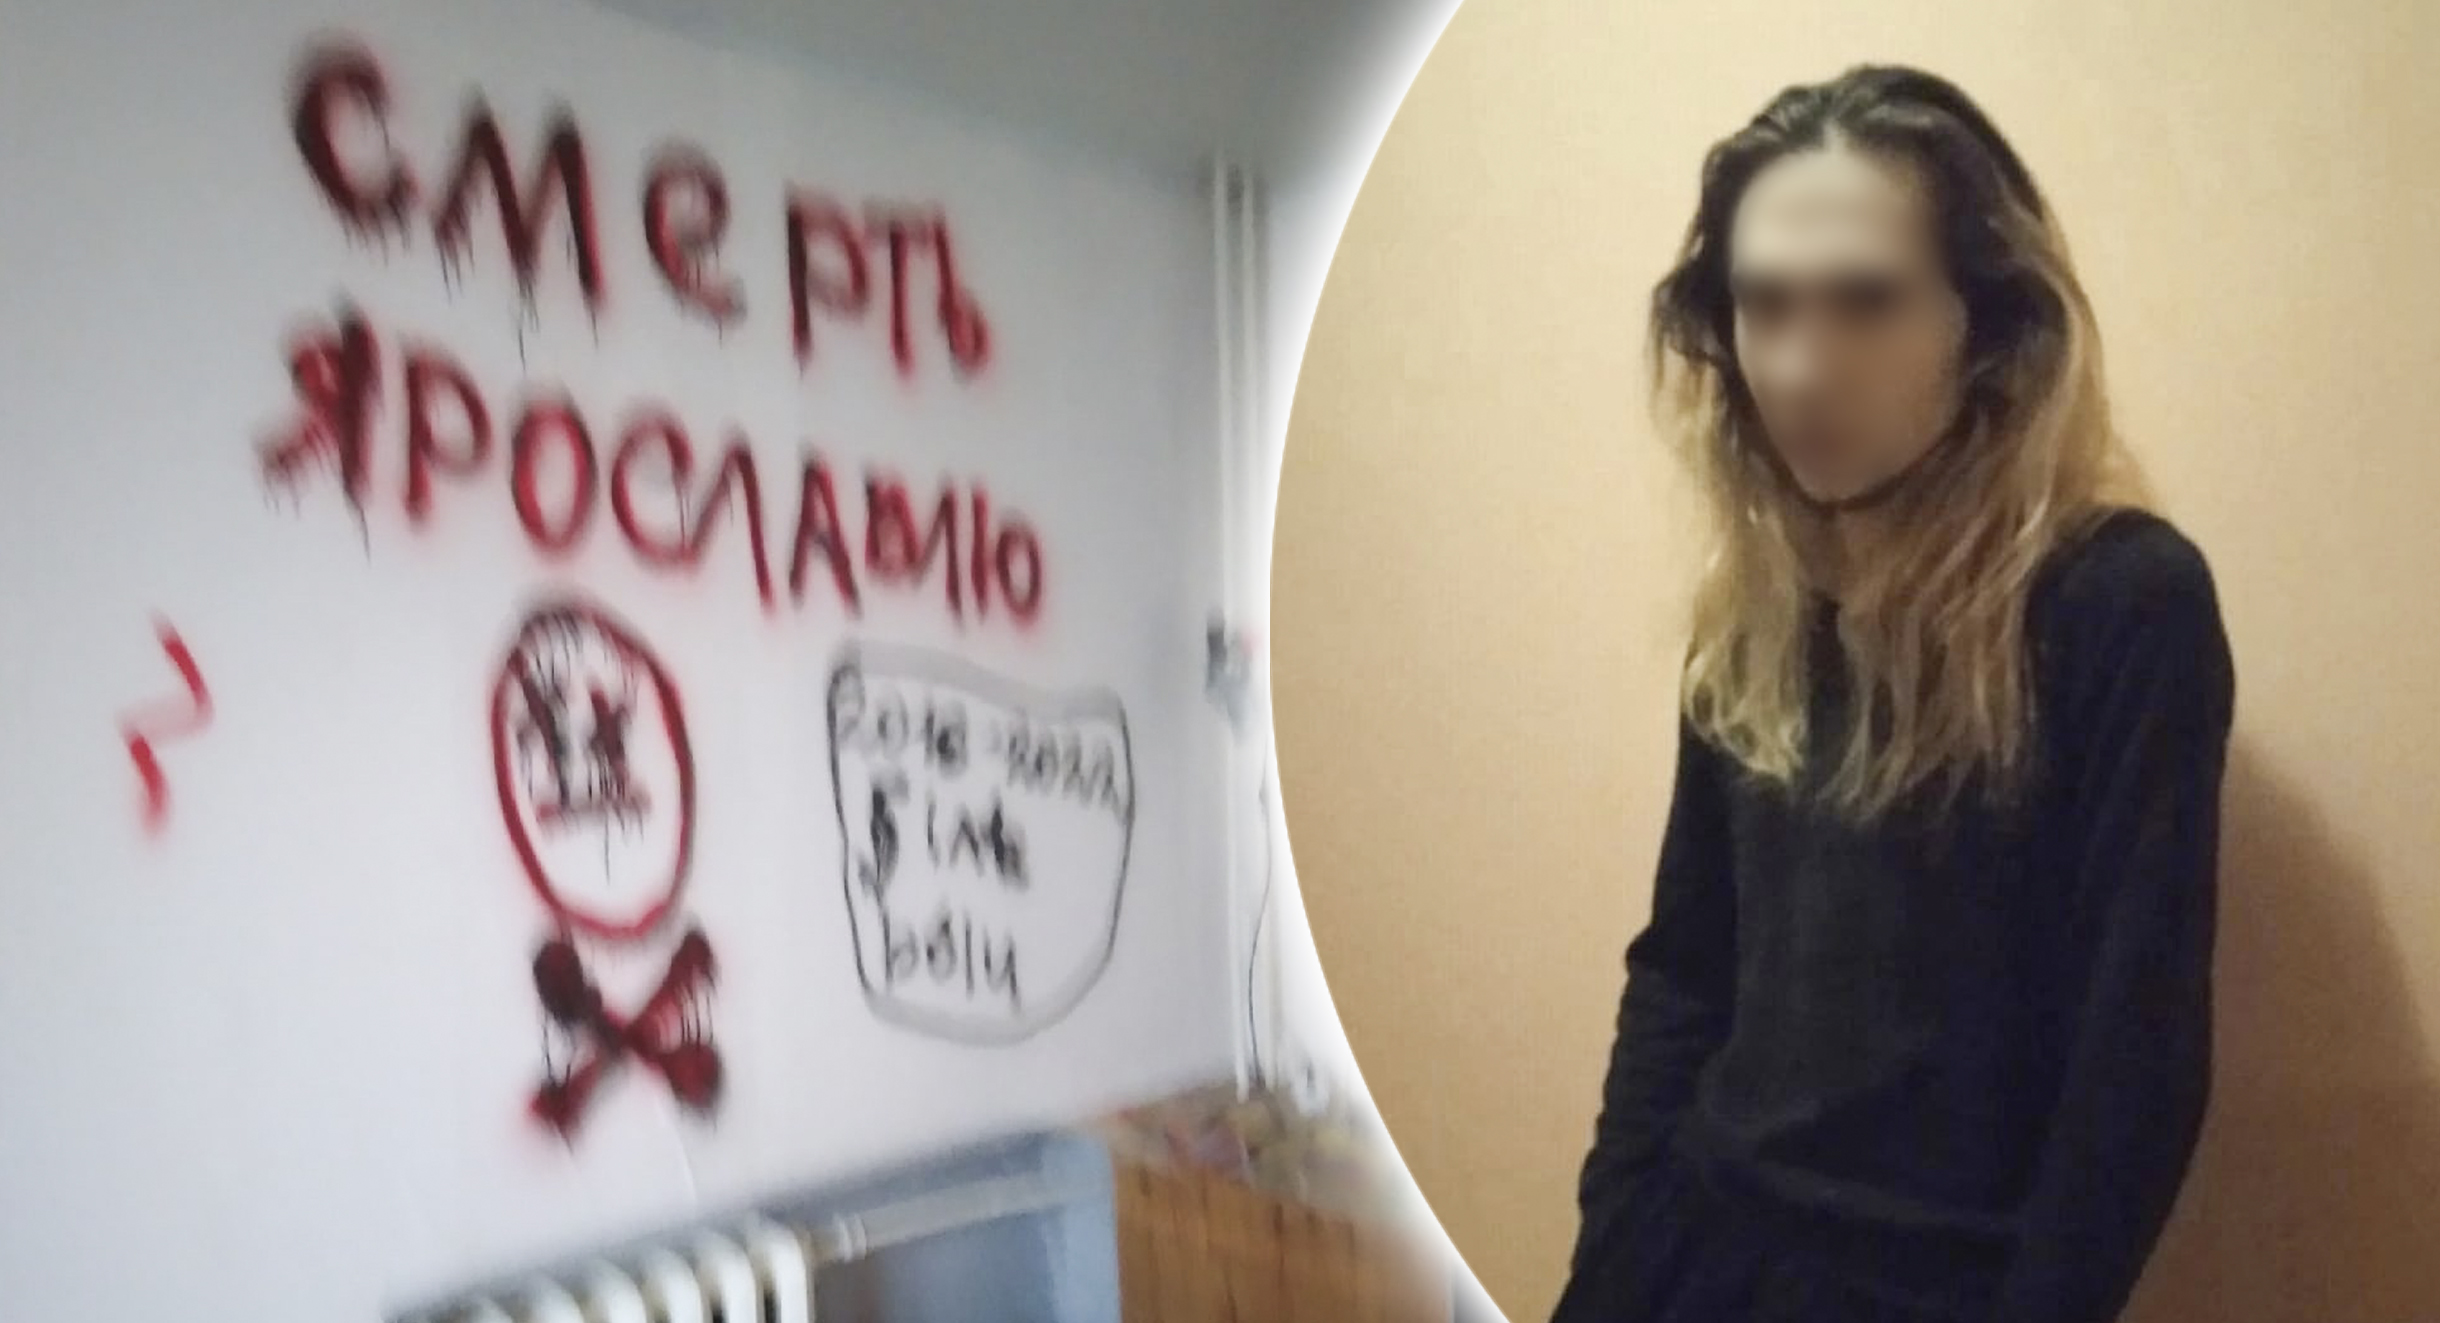 "Смерть Ярославлю": трансвестит исписал стены чужой квартиры гробами и черепами